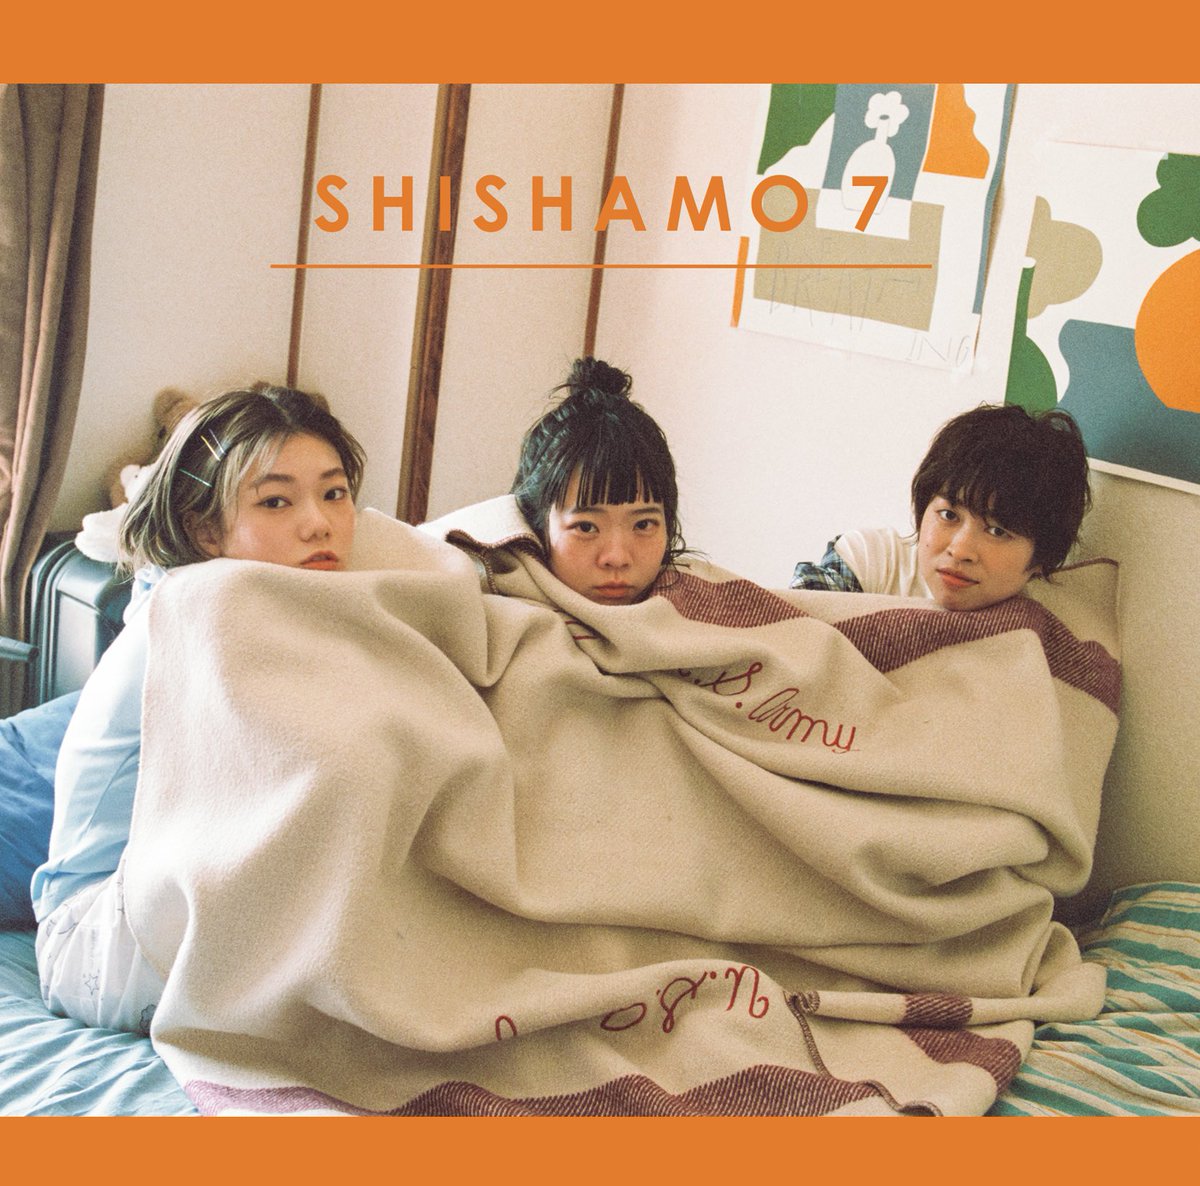 Shishamo Shishamo Band Twitter